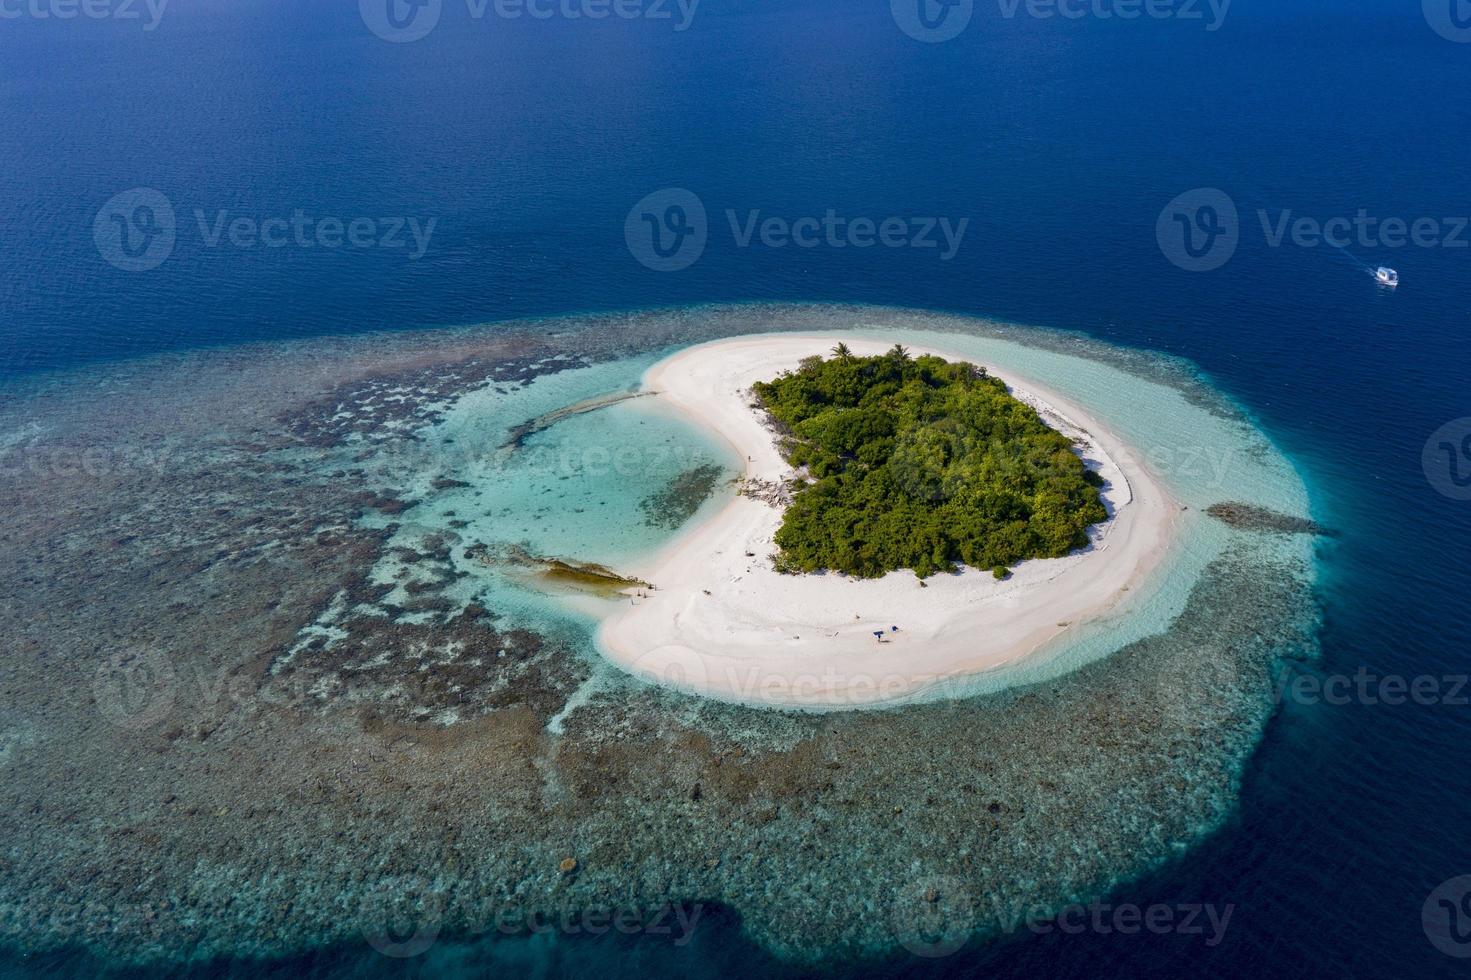 hjärta formad Nej människor ö maldive antenn se panorama landskap foto